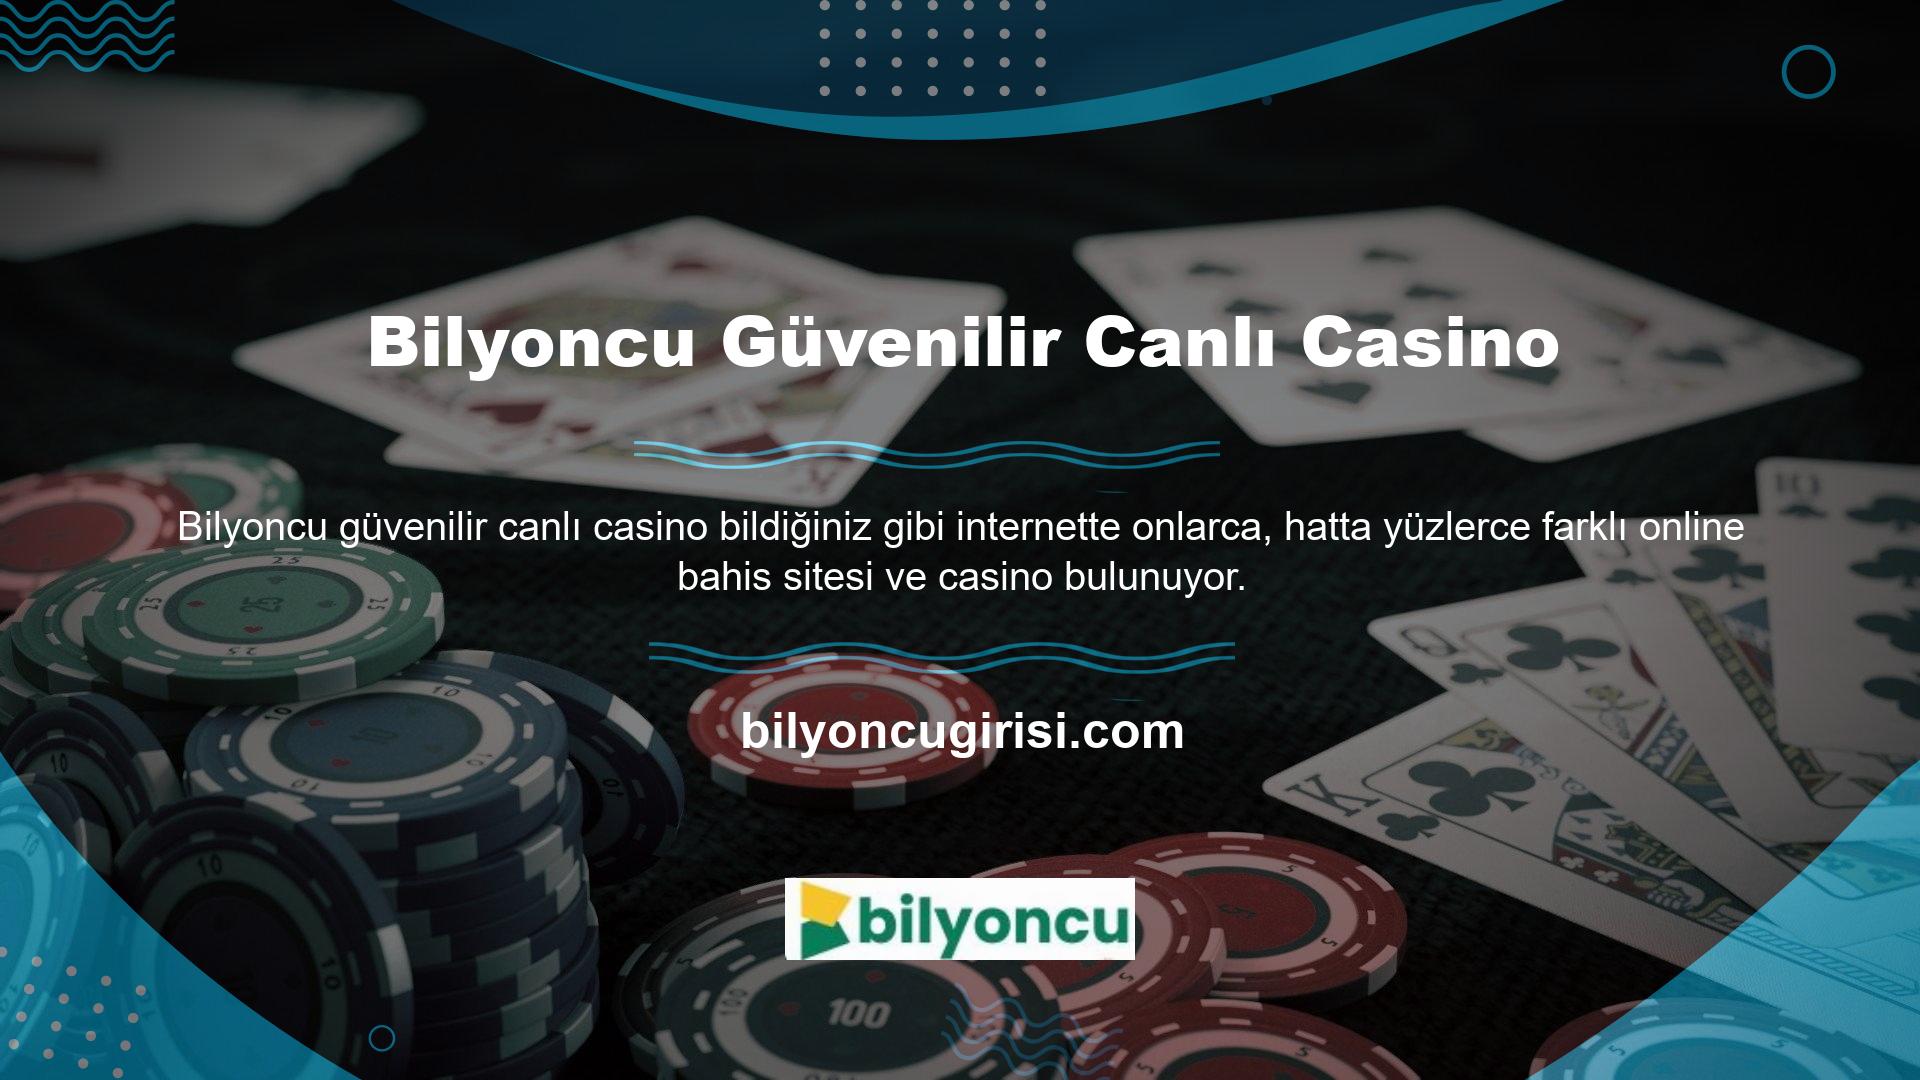 Bu sitelerden farklı olarak Bilyoncu Canlı Casino, kullanıcılara tamamen güvenli ve yasal bir oyun ortamı sunmaktadır